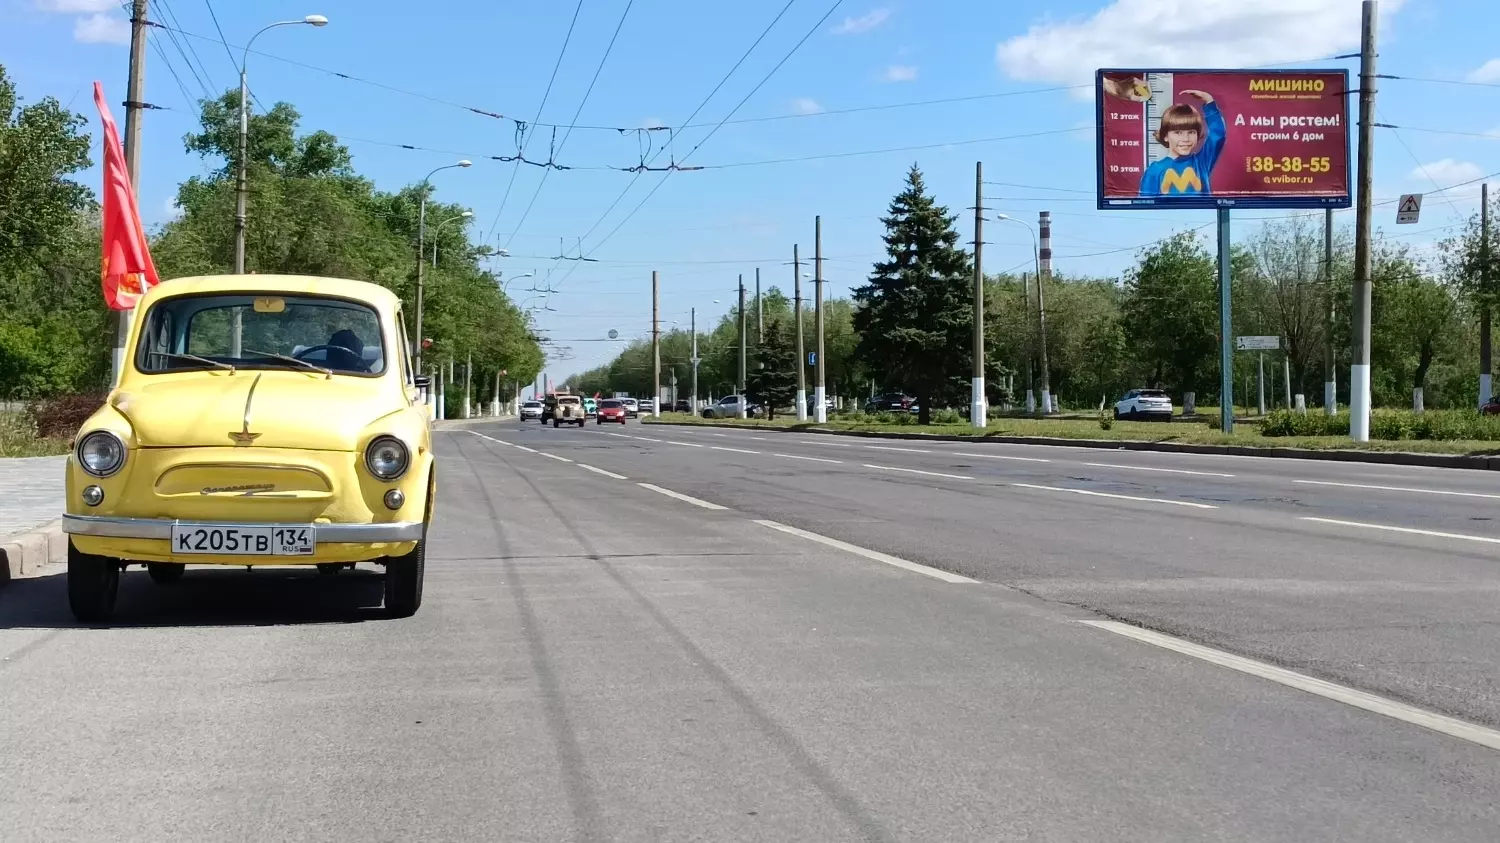 Ретроавтомобили проехали по центру Волгограда 9 мая